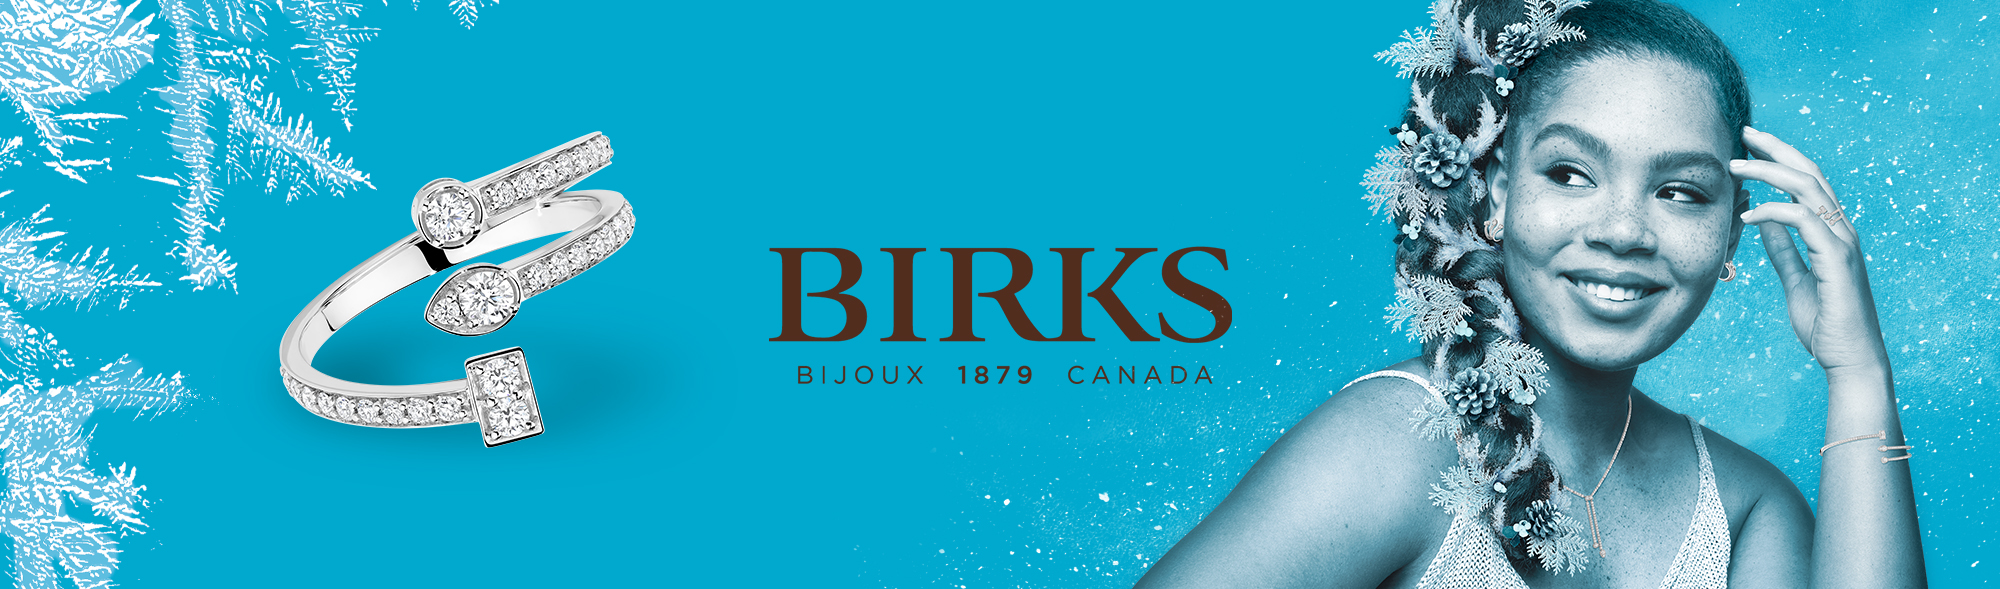 Bijoux Birks - Mitchell & Jewell Wedding Bands, Red Deer, Alberta